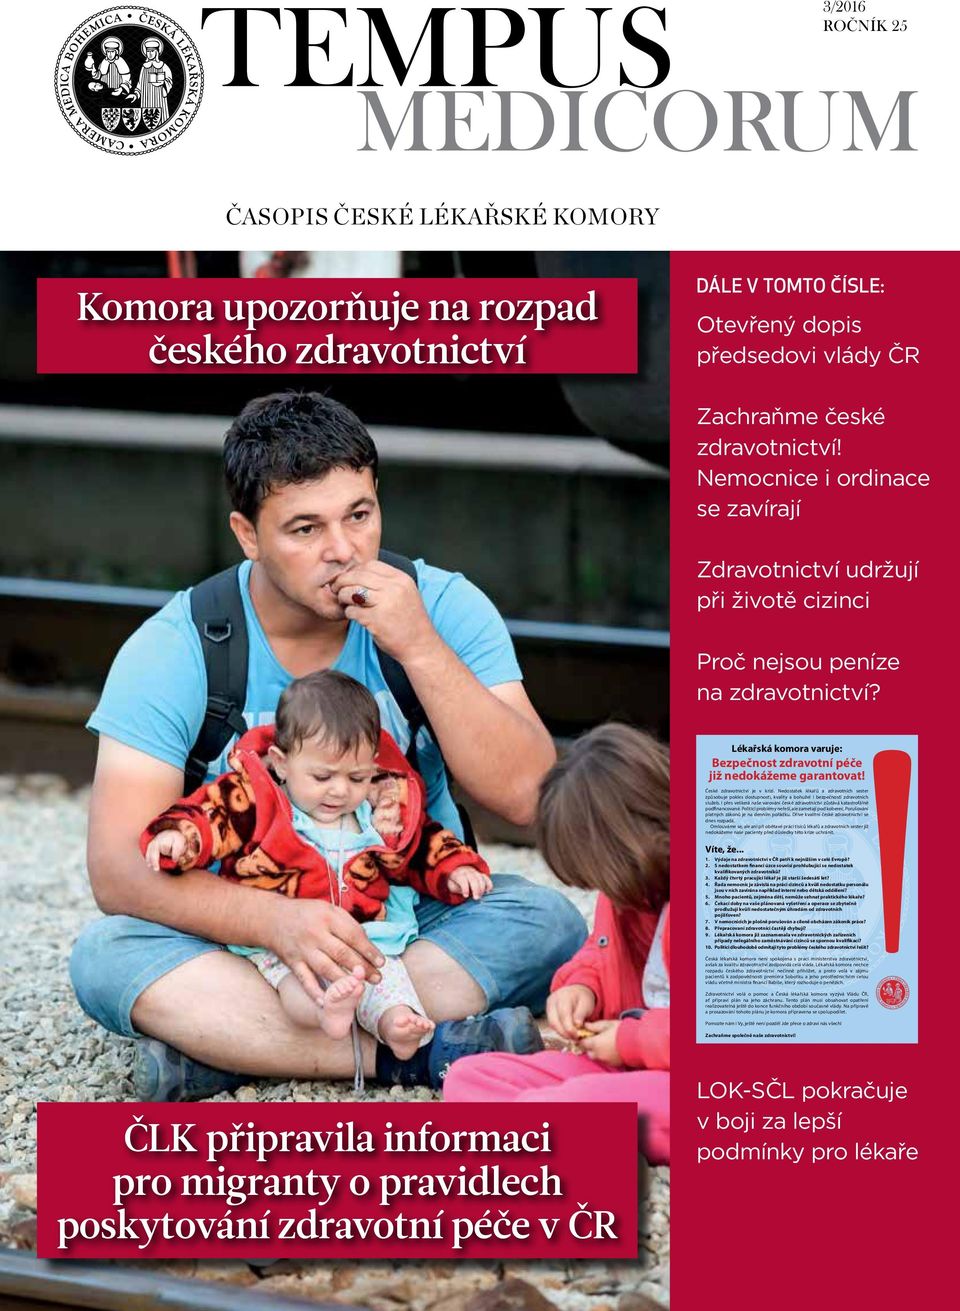 Lékařská komora varuje: Bezpečnost zdravotní péče již nedokážeme garantovat! České zdravotnictví je v krizi.